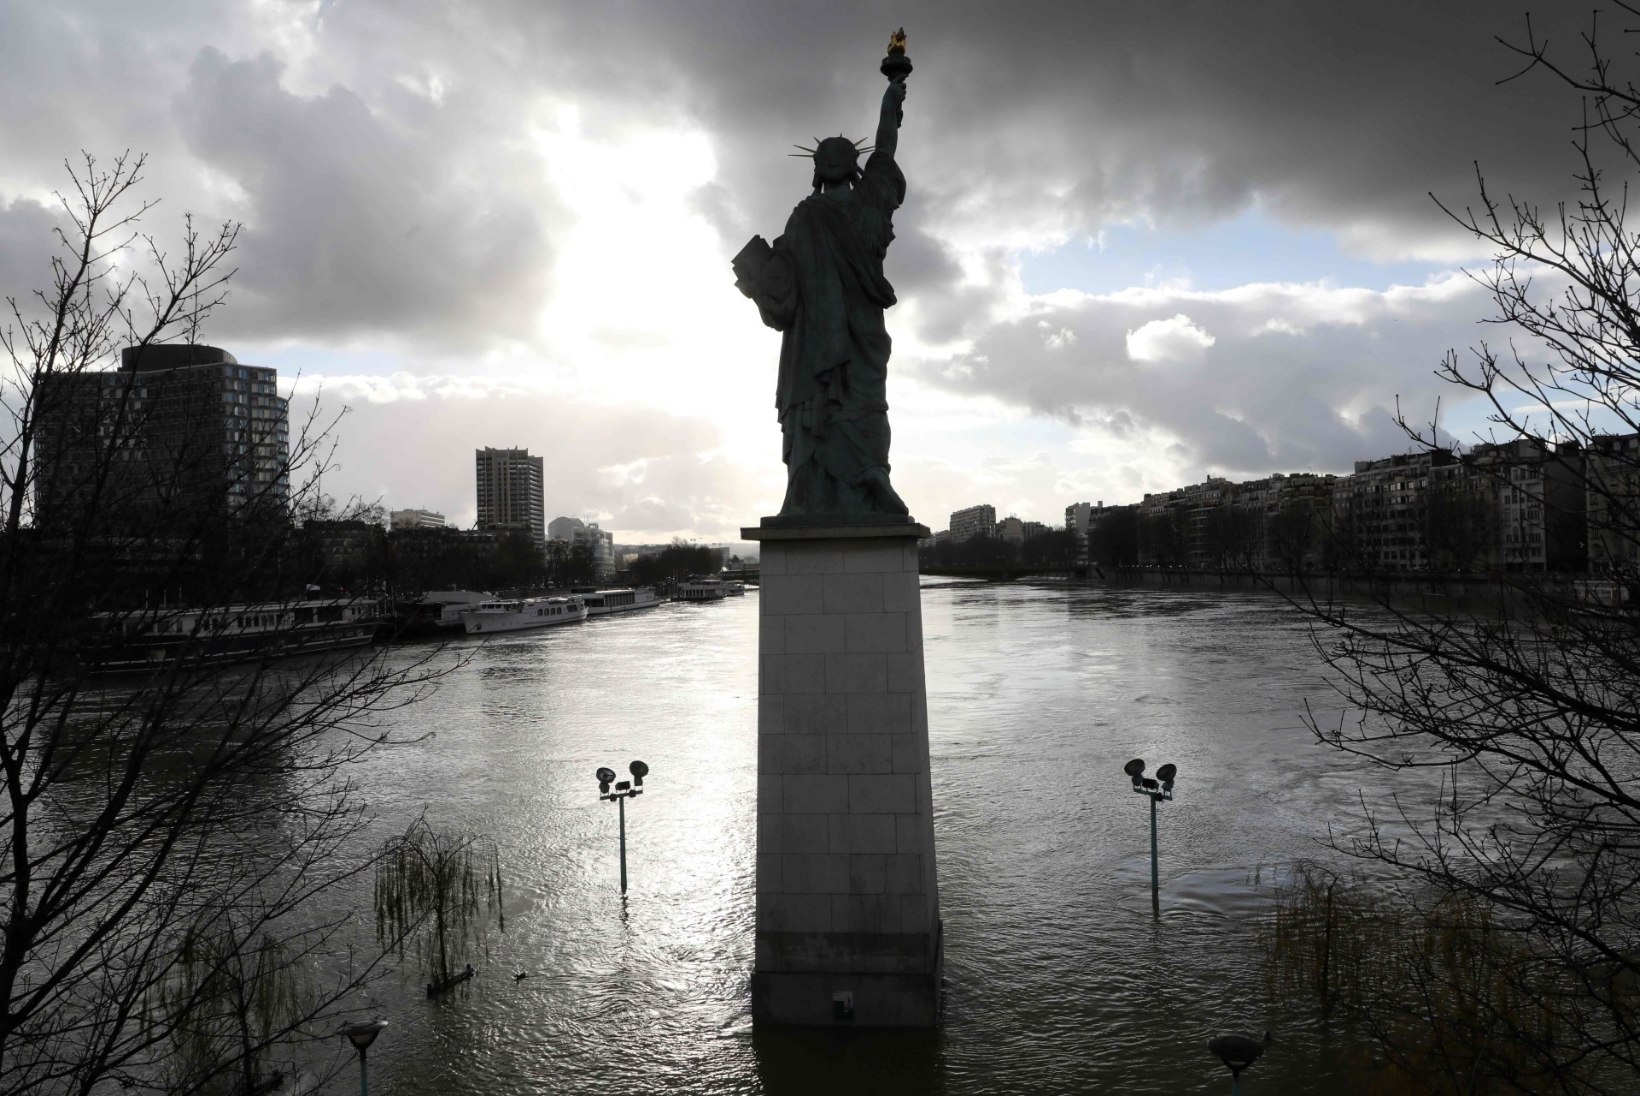 FOTOD | Paduvihmad on mitmed Pariisi tänavad vee alla jätnud